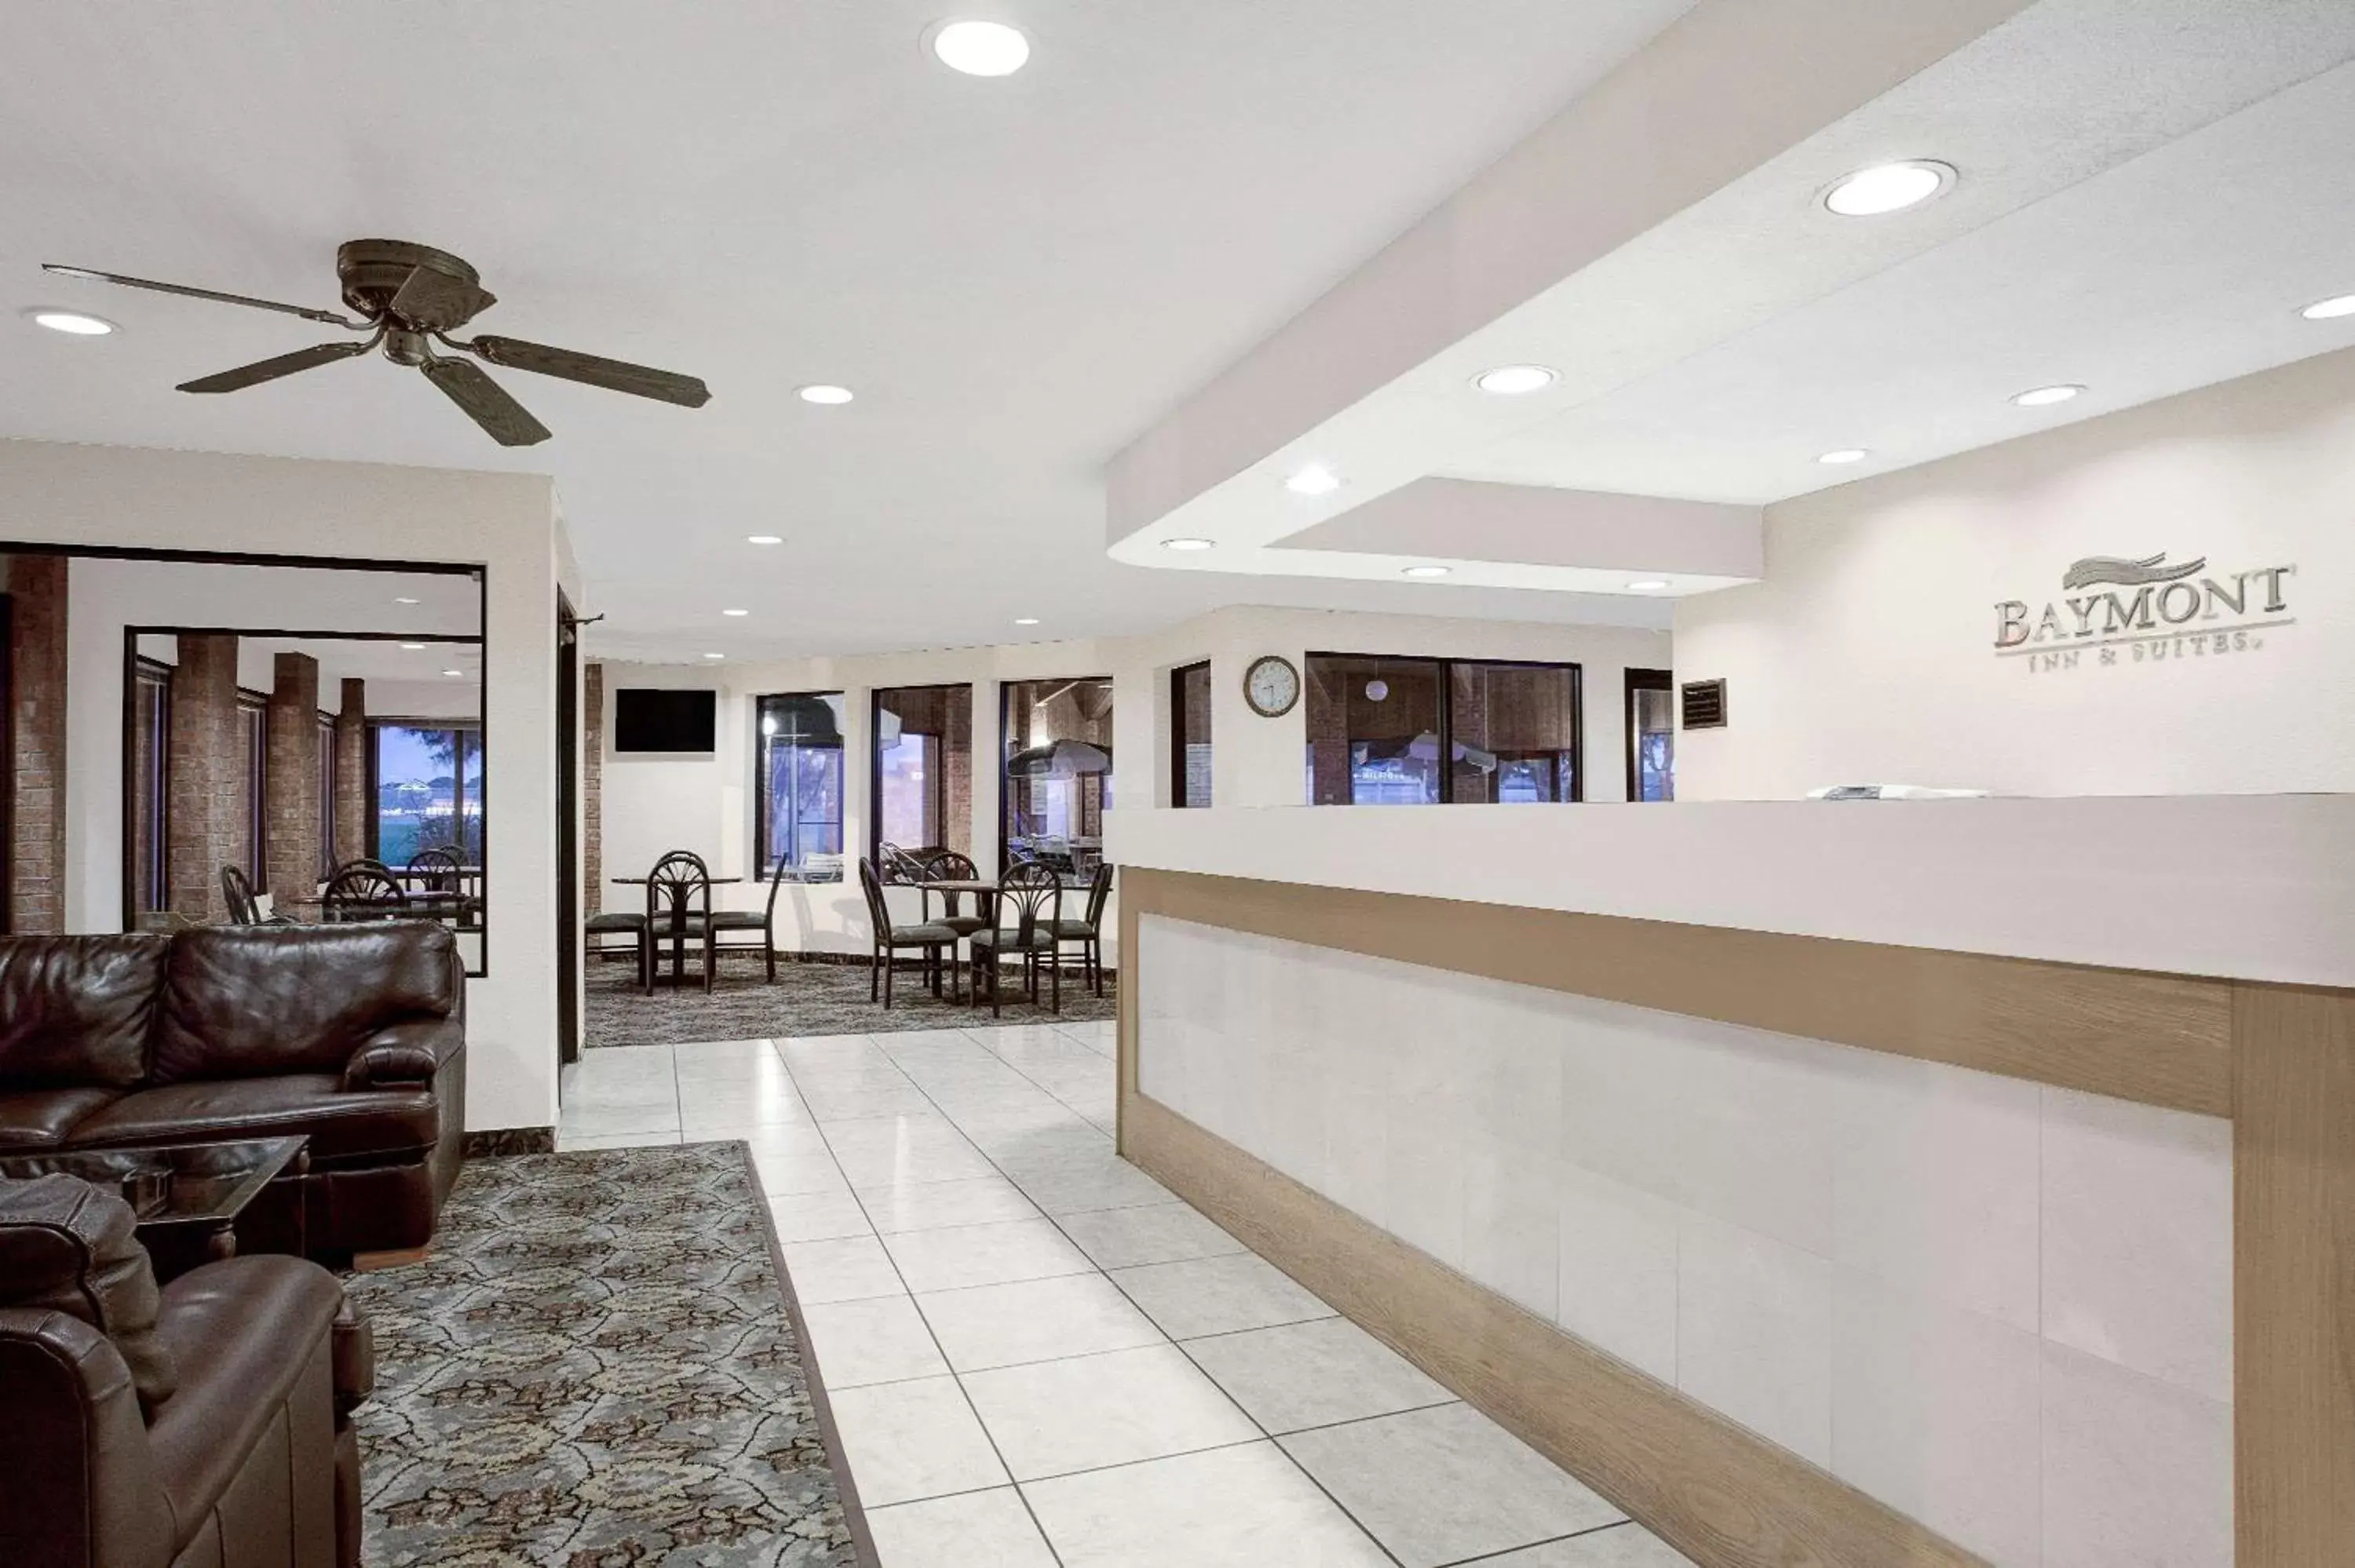 Lobby or reception, Lobby/Reception in Baymont Inn & Suites by Wyndham San Marcos